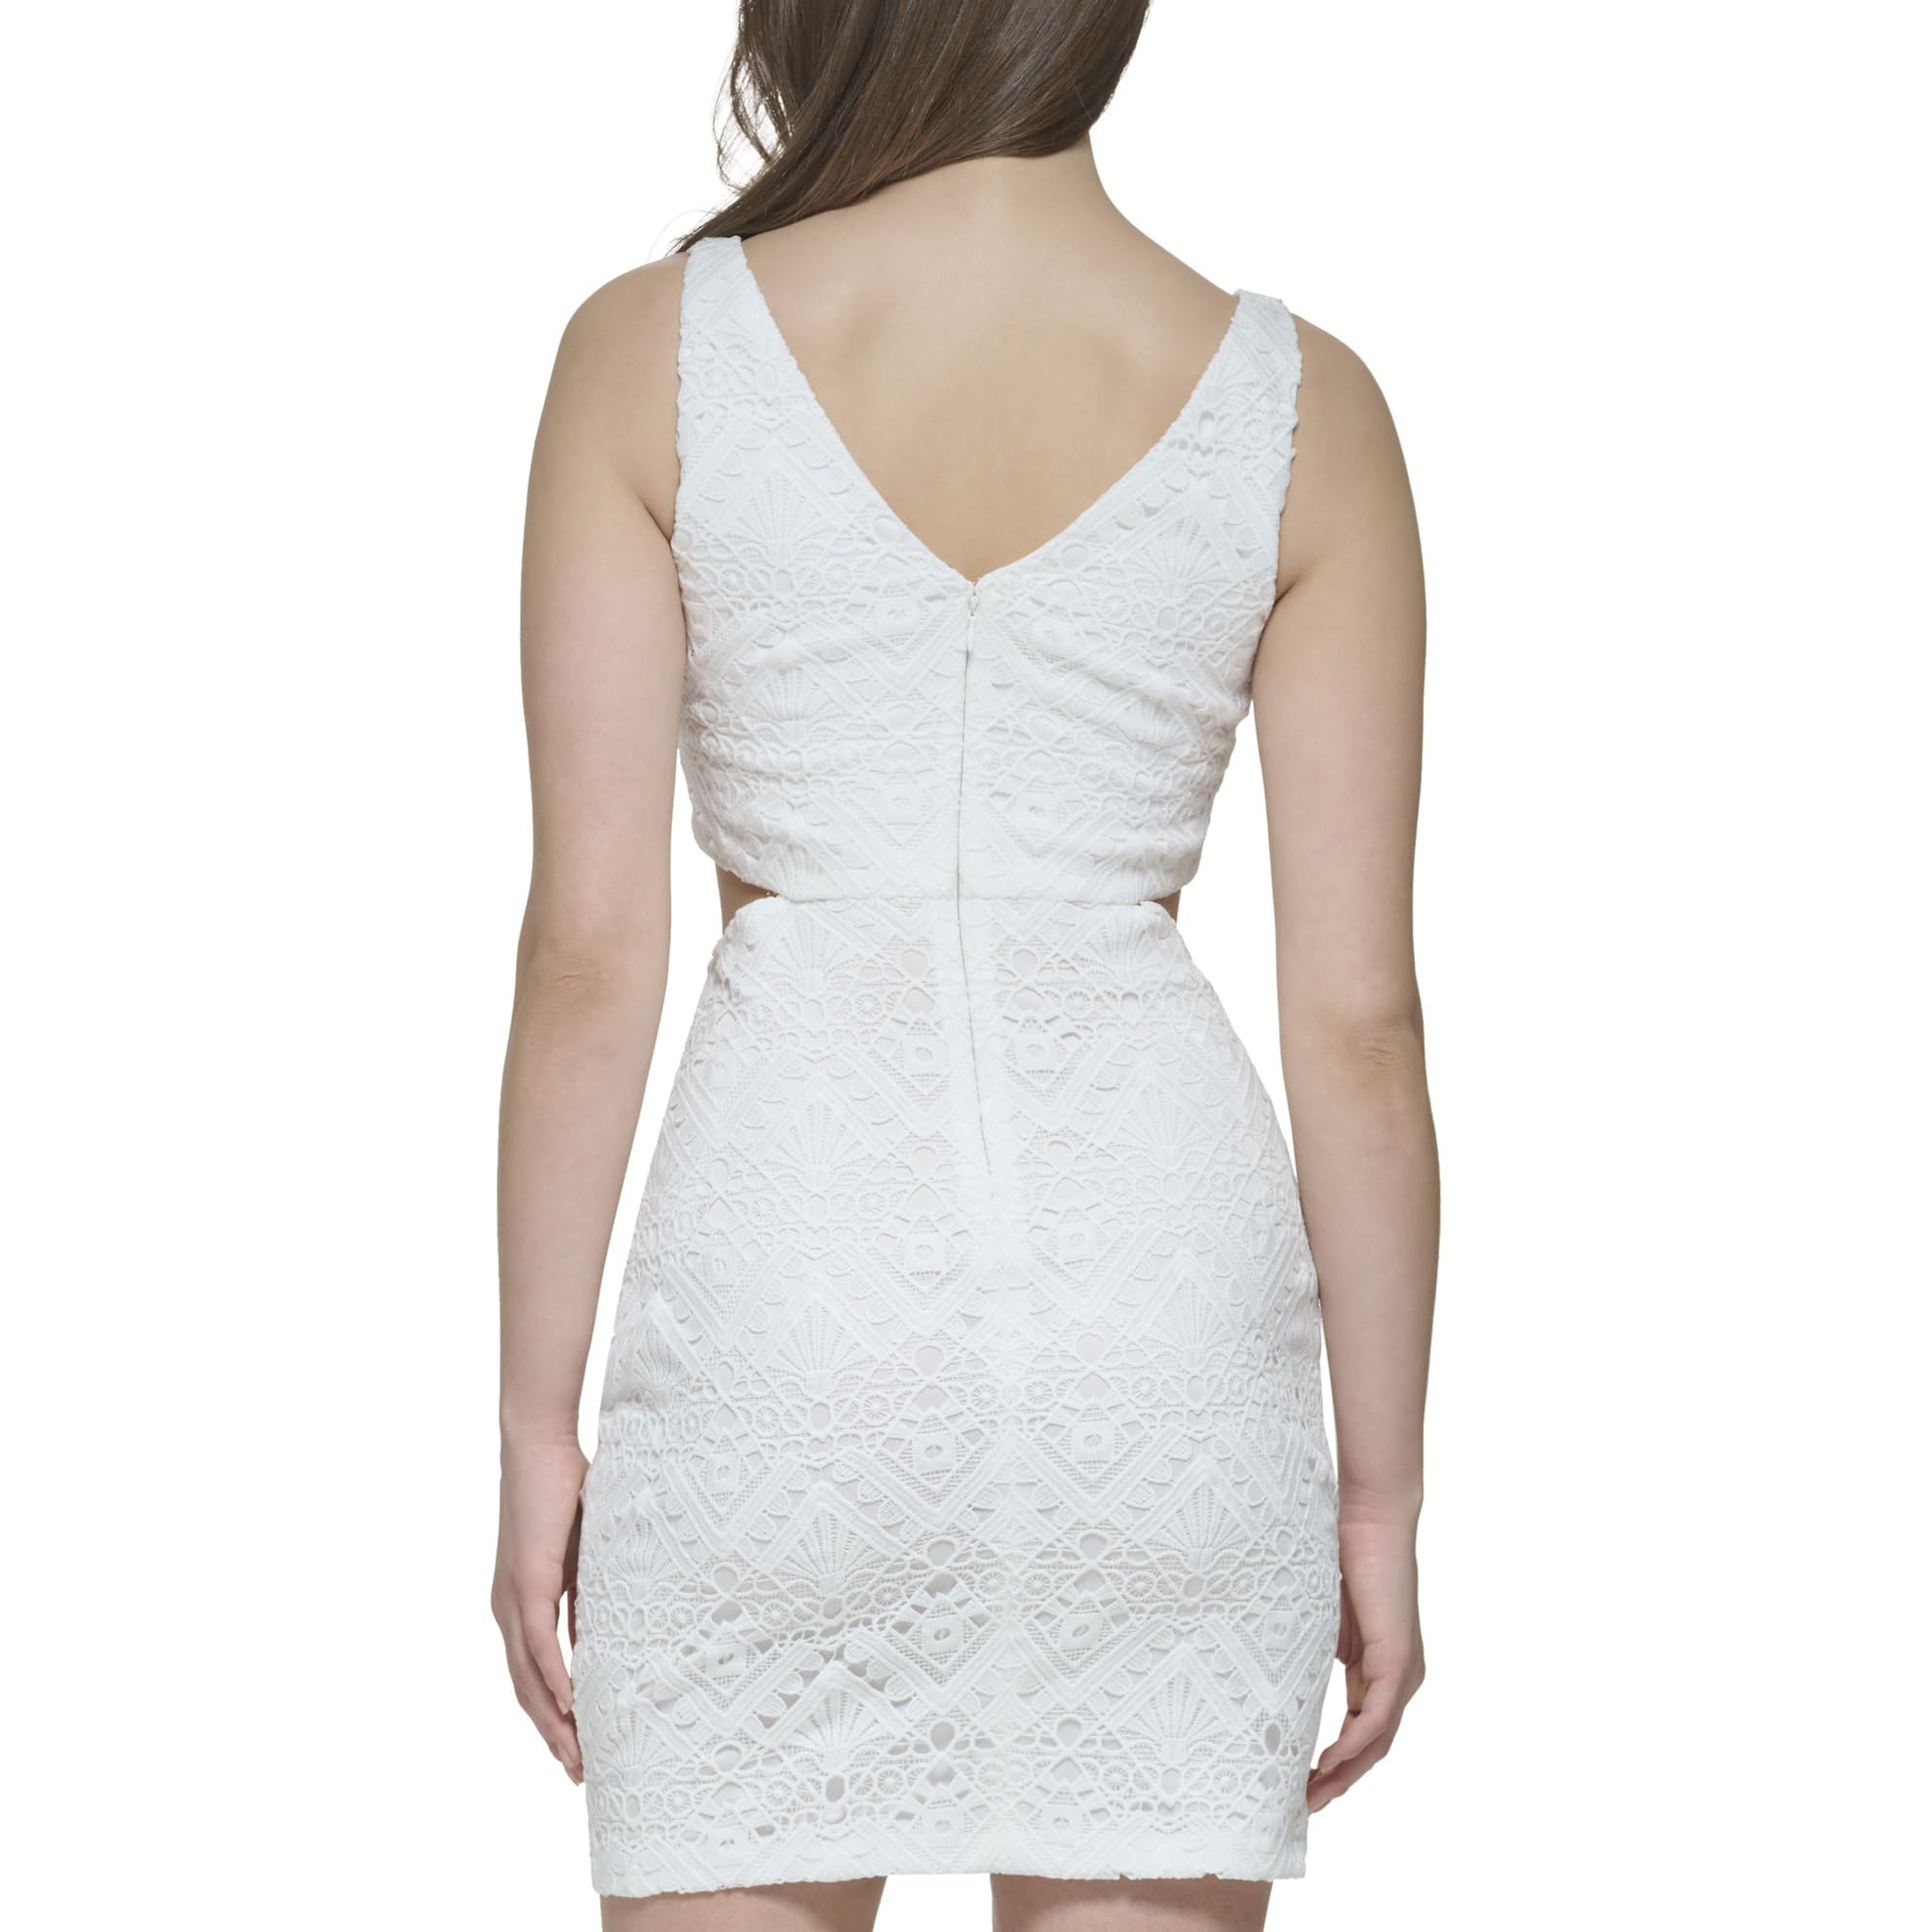 GUESS Women's Sleeveless Lace Cut Out Sheath Dress, White